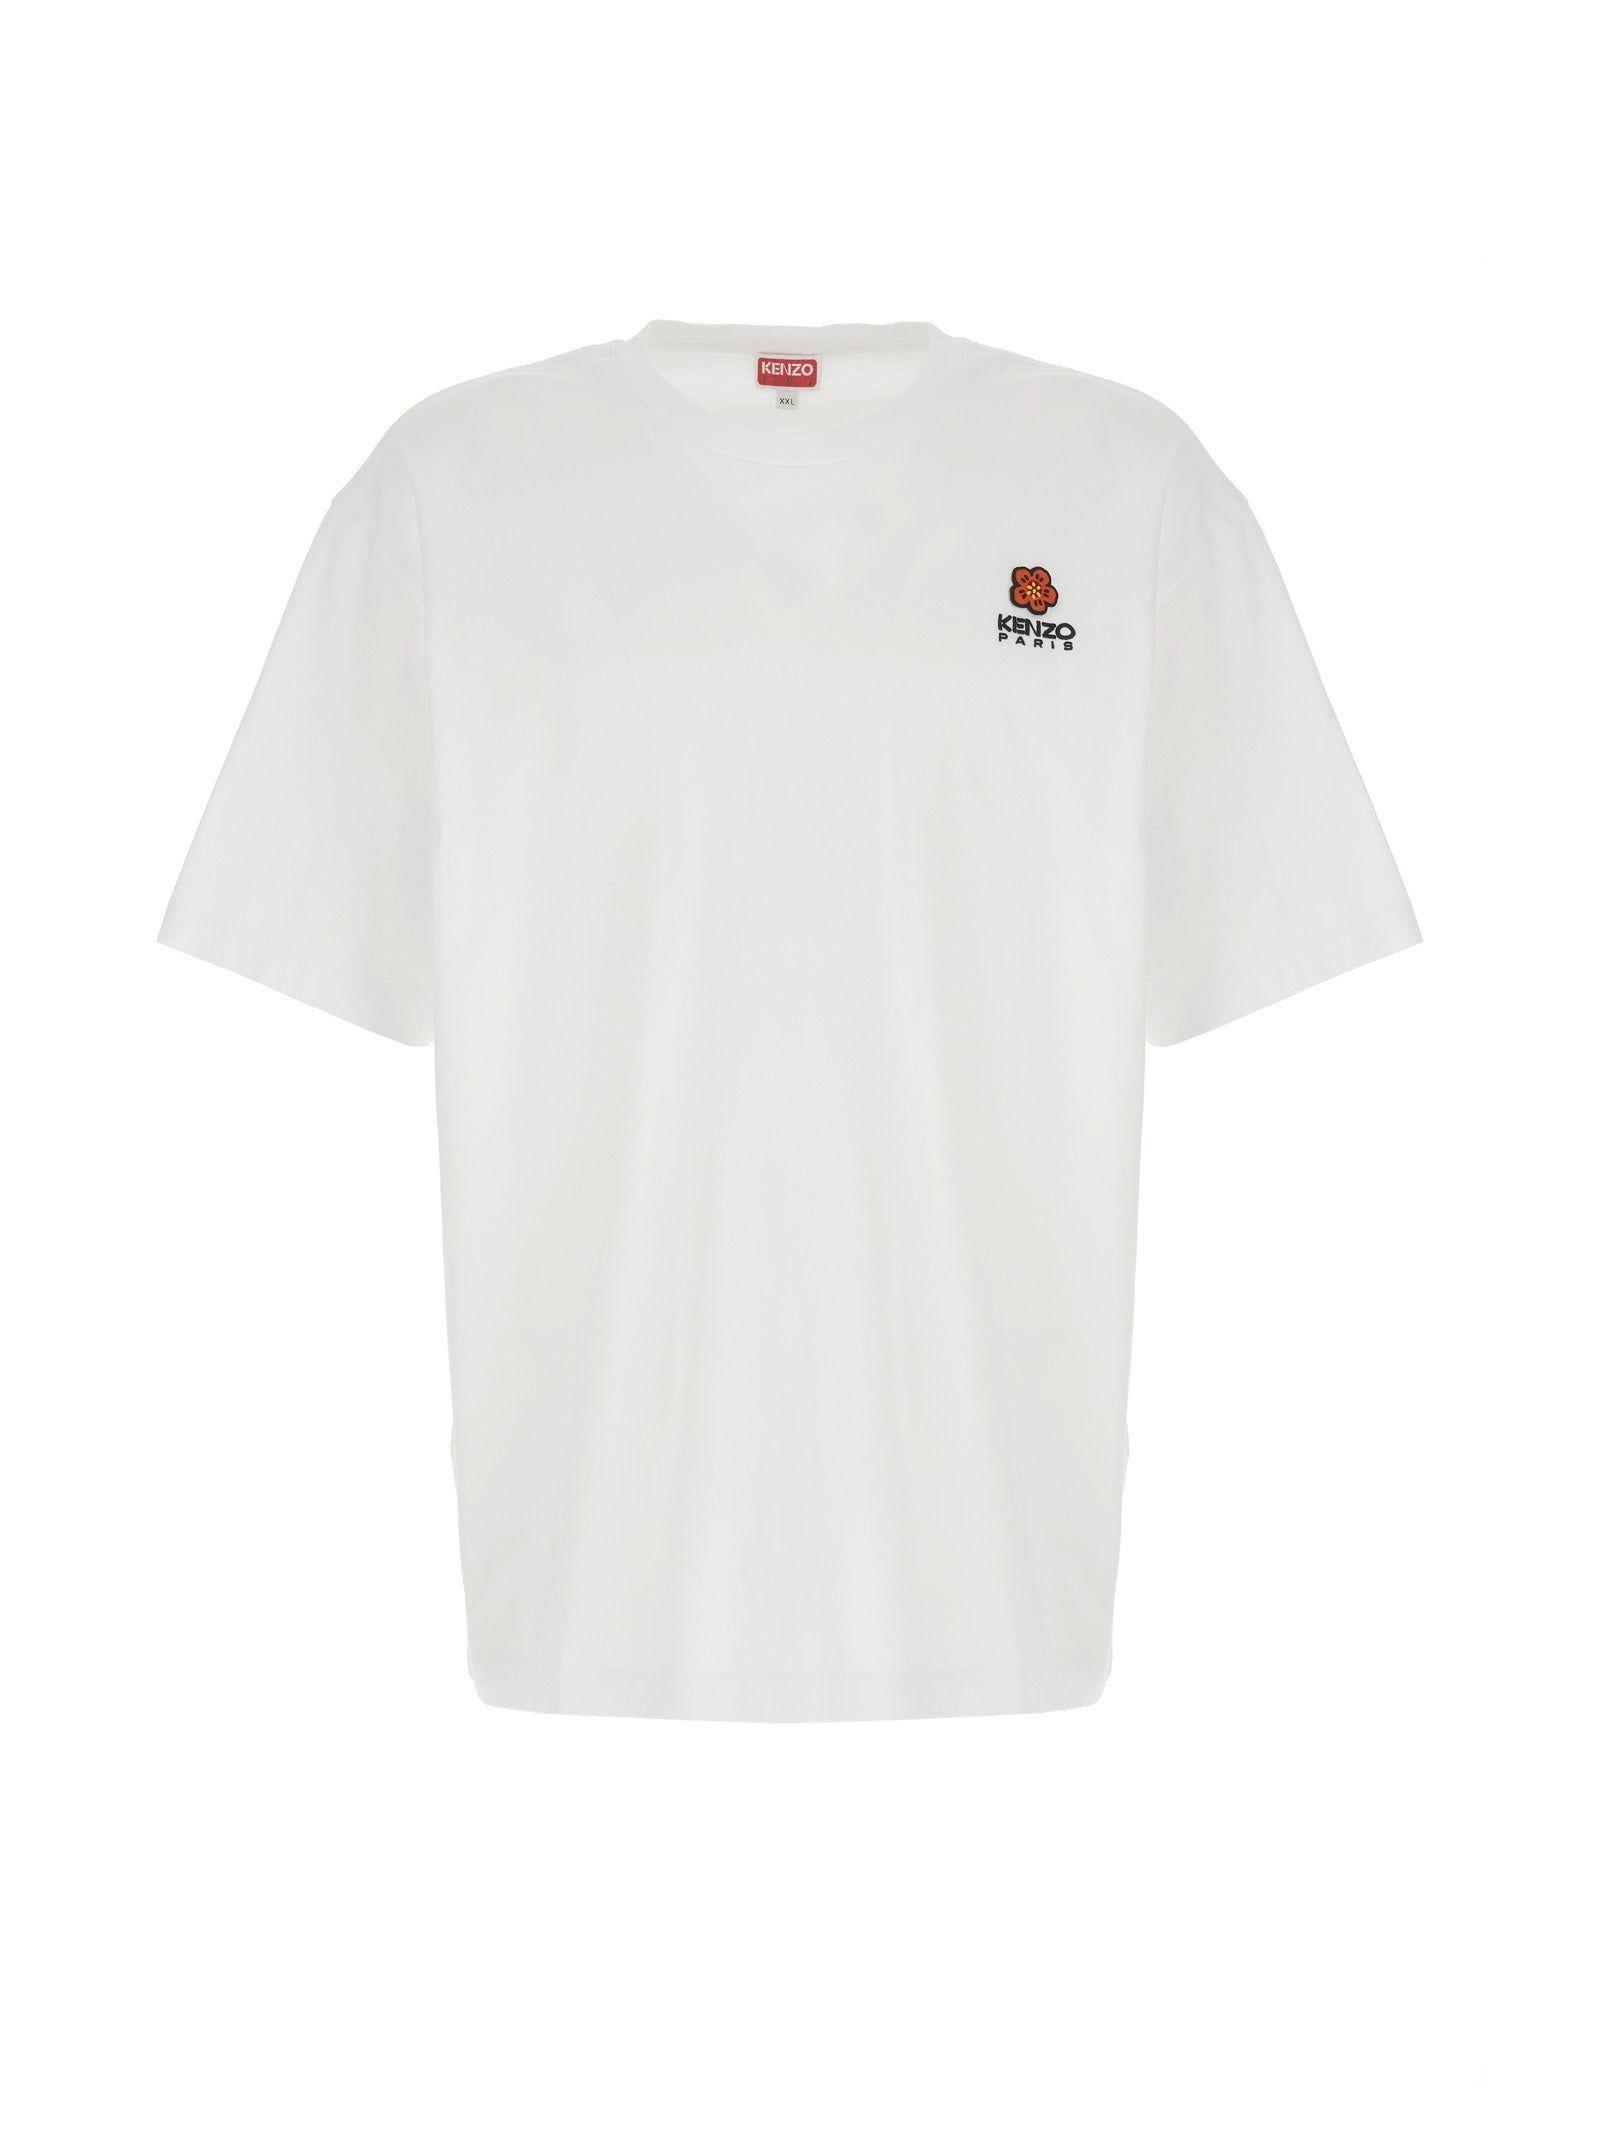 KENZO Boke Flower Crest T-shirt in White for Men | Lyst